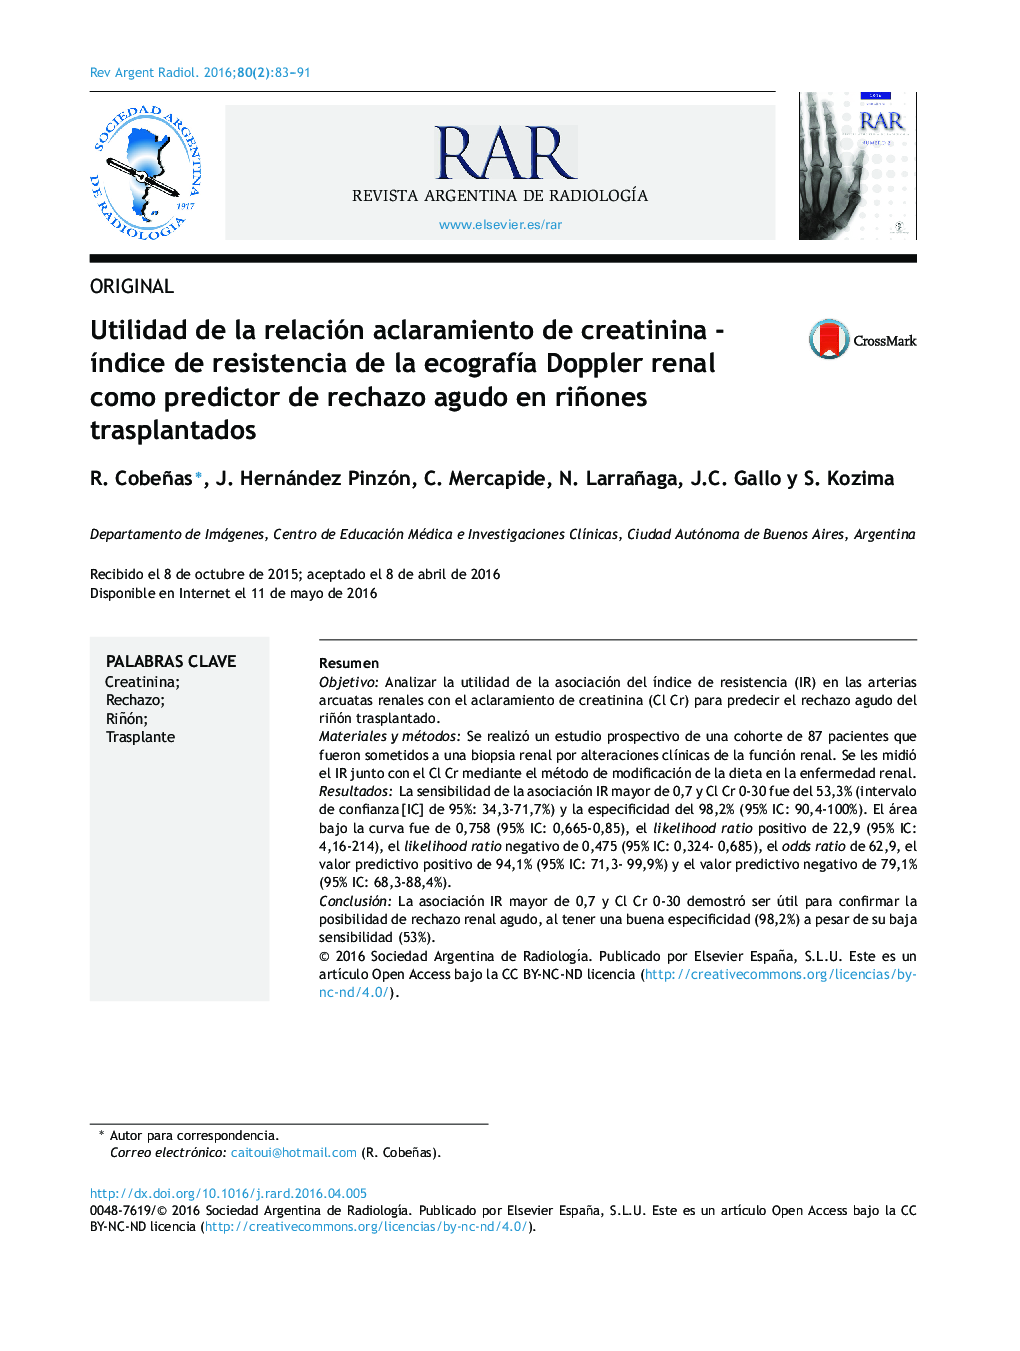 Utilidad de la relación aclaramiento de creatinina - índice de resistencia de la ecografía Doppler renal como predictor de rechazo agudo en riñones trasplantados